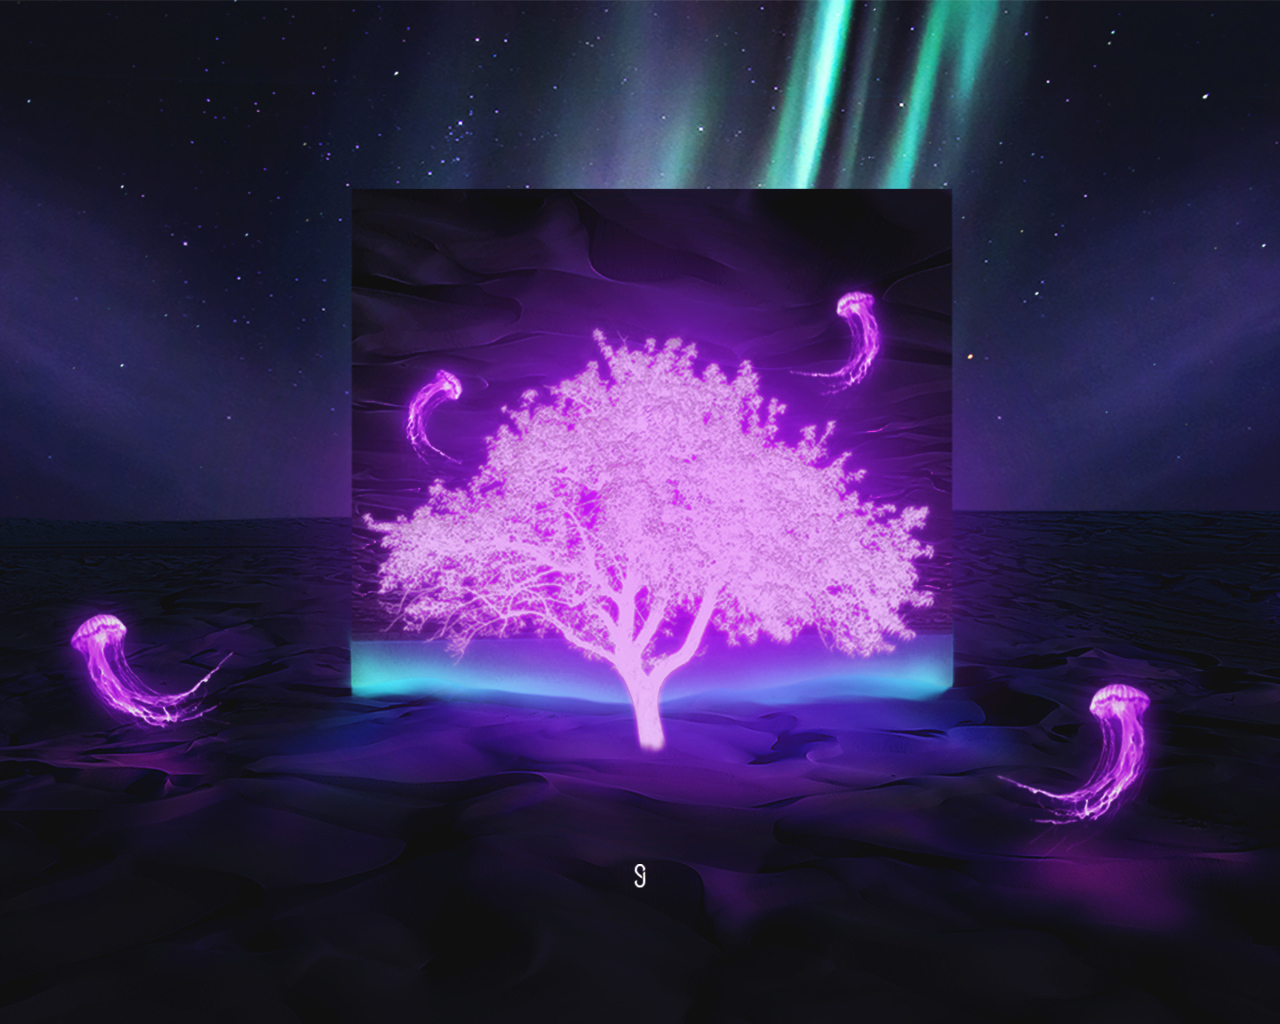 Неоновое дерево в пустыне на фоне неба с северным сиянием